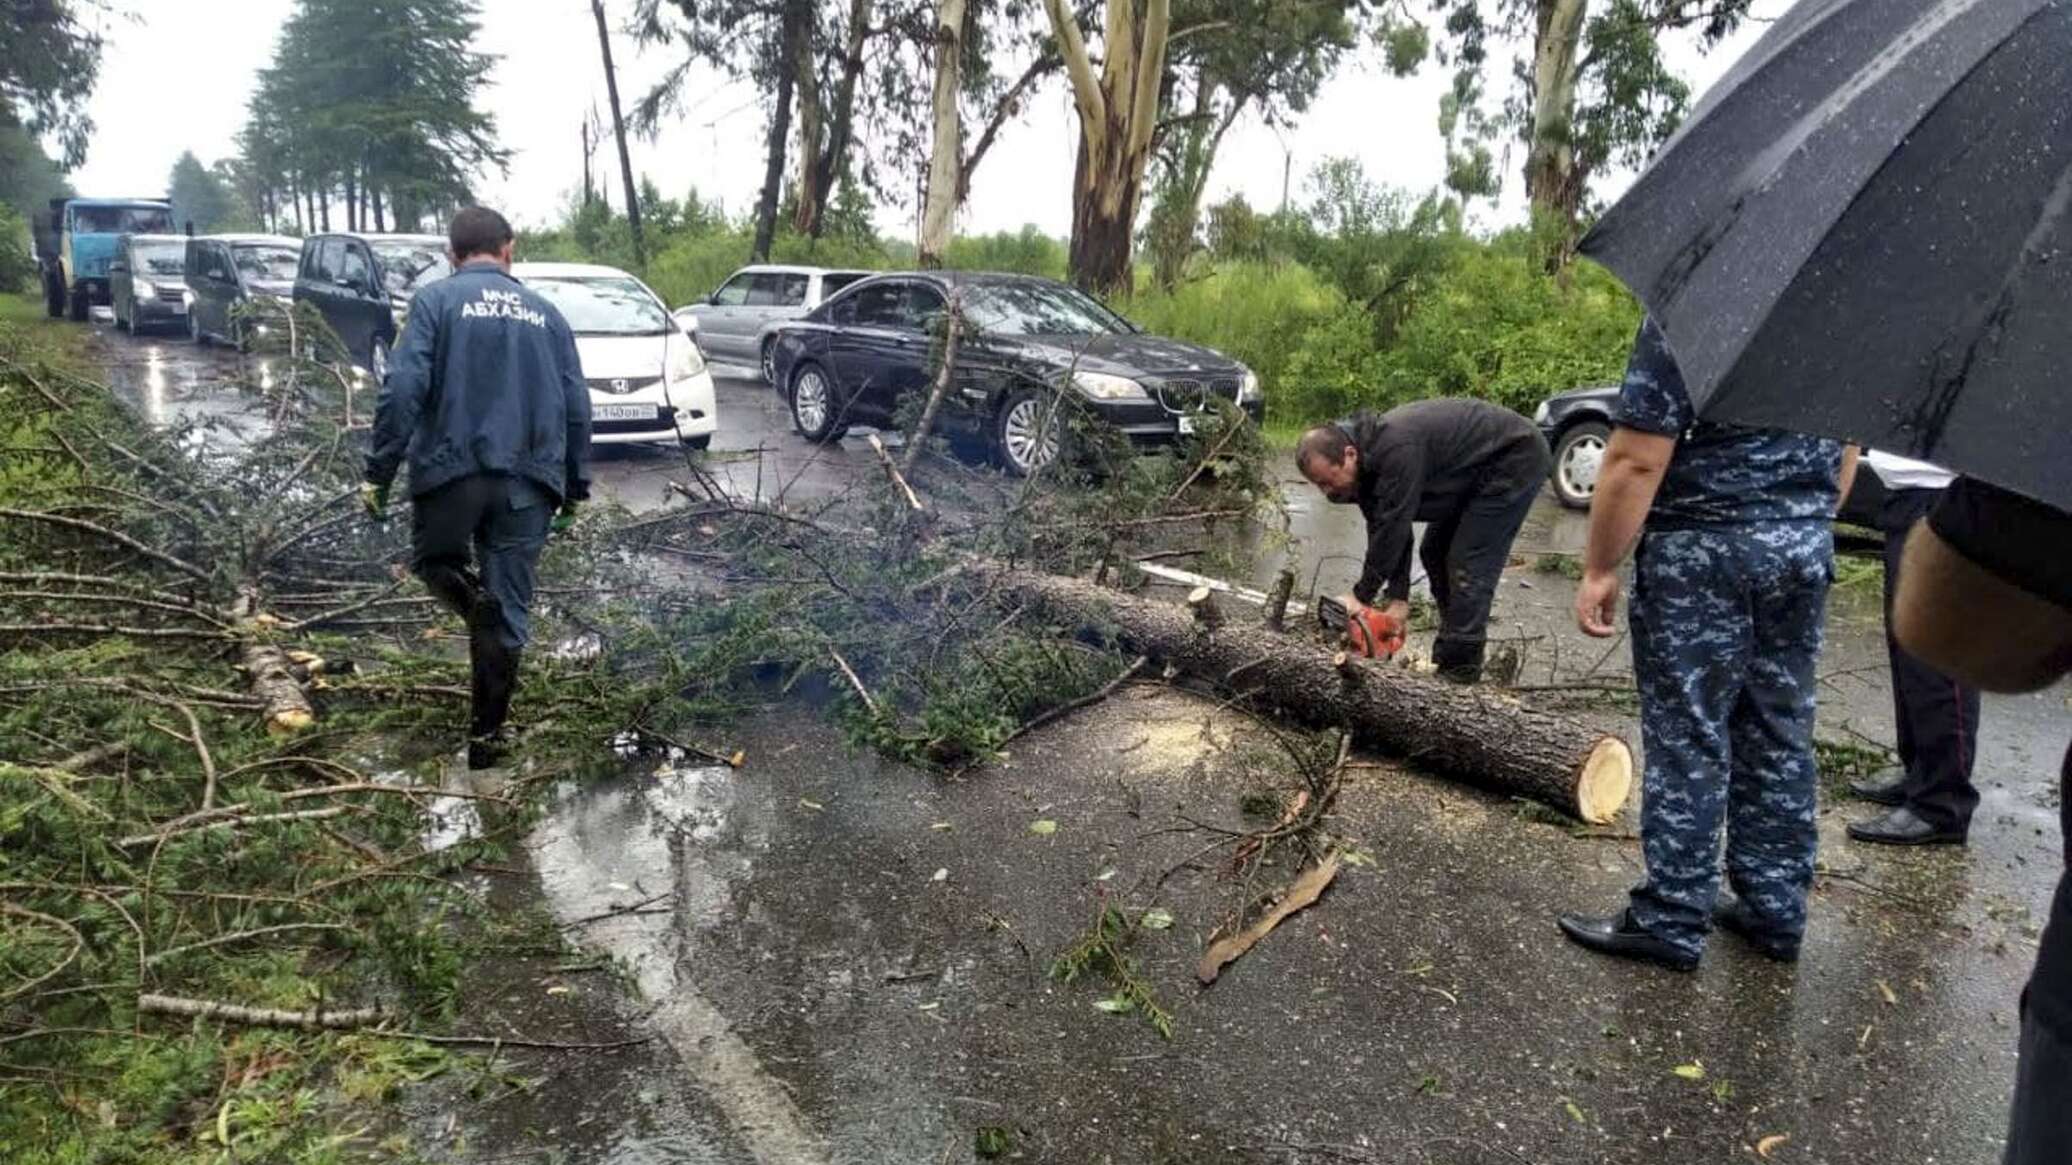 Новости абхазии спутник. Упало дерево в Абхазии. Погибающие дерево в Абхазии. ДТП В Абхазии 2016 г с Кындыг. Авария с деревом в Абхазии 4 октября 2018 года.